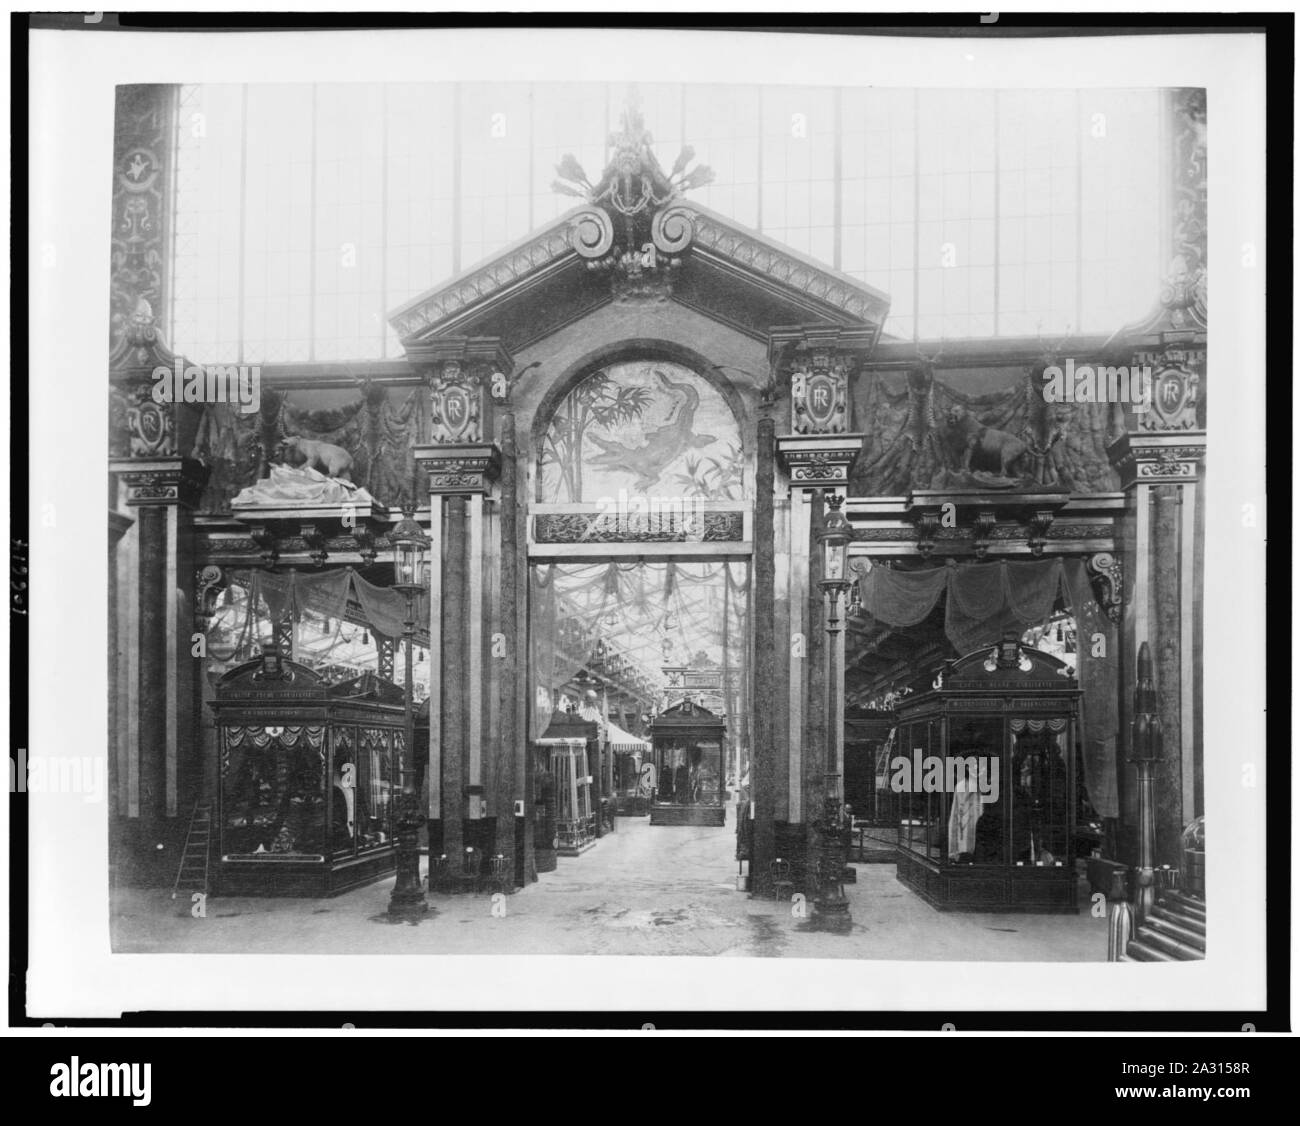 Eingang zur Ausstellung von Forstwirtschaft, Jagd & Angeln Produkte, Palast der unterschiedlichsten Branchen, Paris Exposition, 1889 Stockfoto